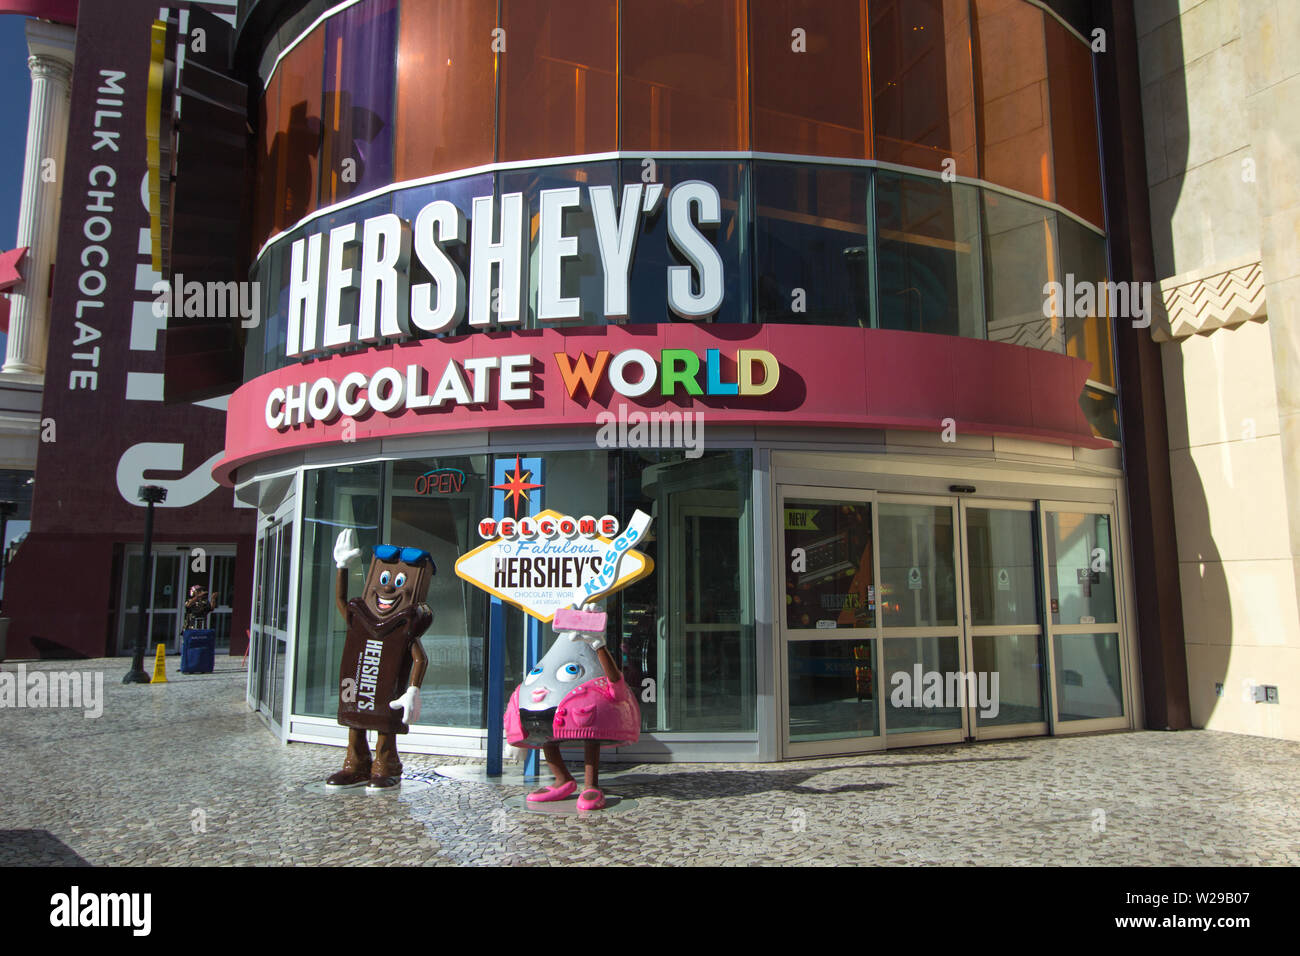 Las Vegas, Nevada, EE.UU. - el 6 de mayo de 2019: Exterior del Hershey's Chocolate World en Las Vegas Foto de stock